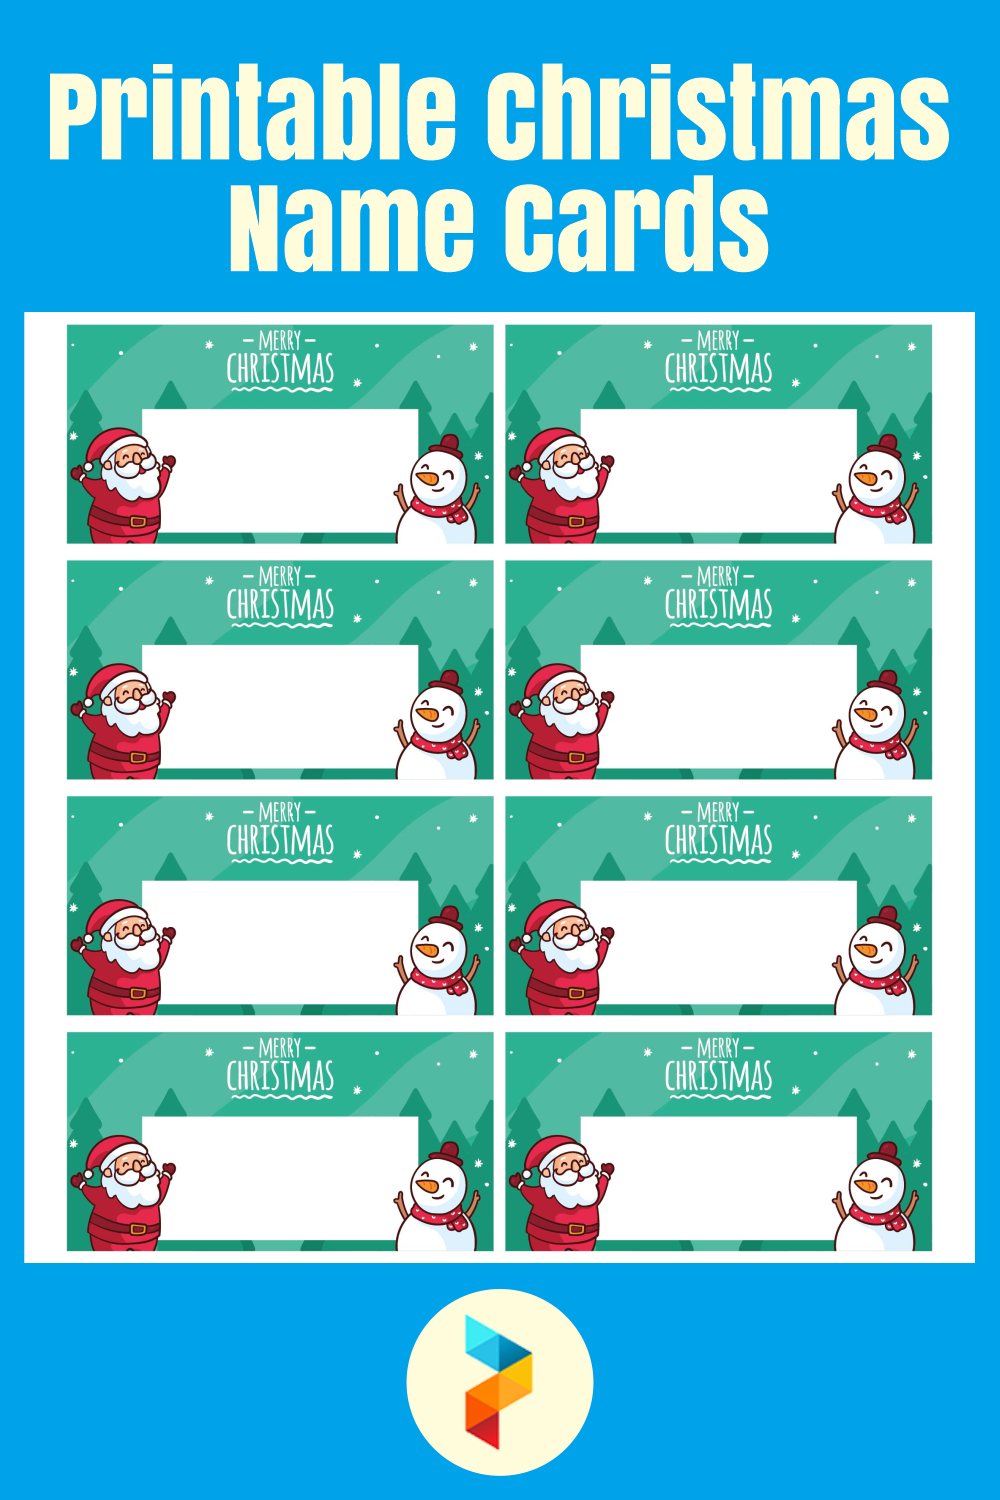 Printable Christmas Name Cards